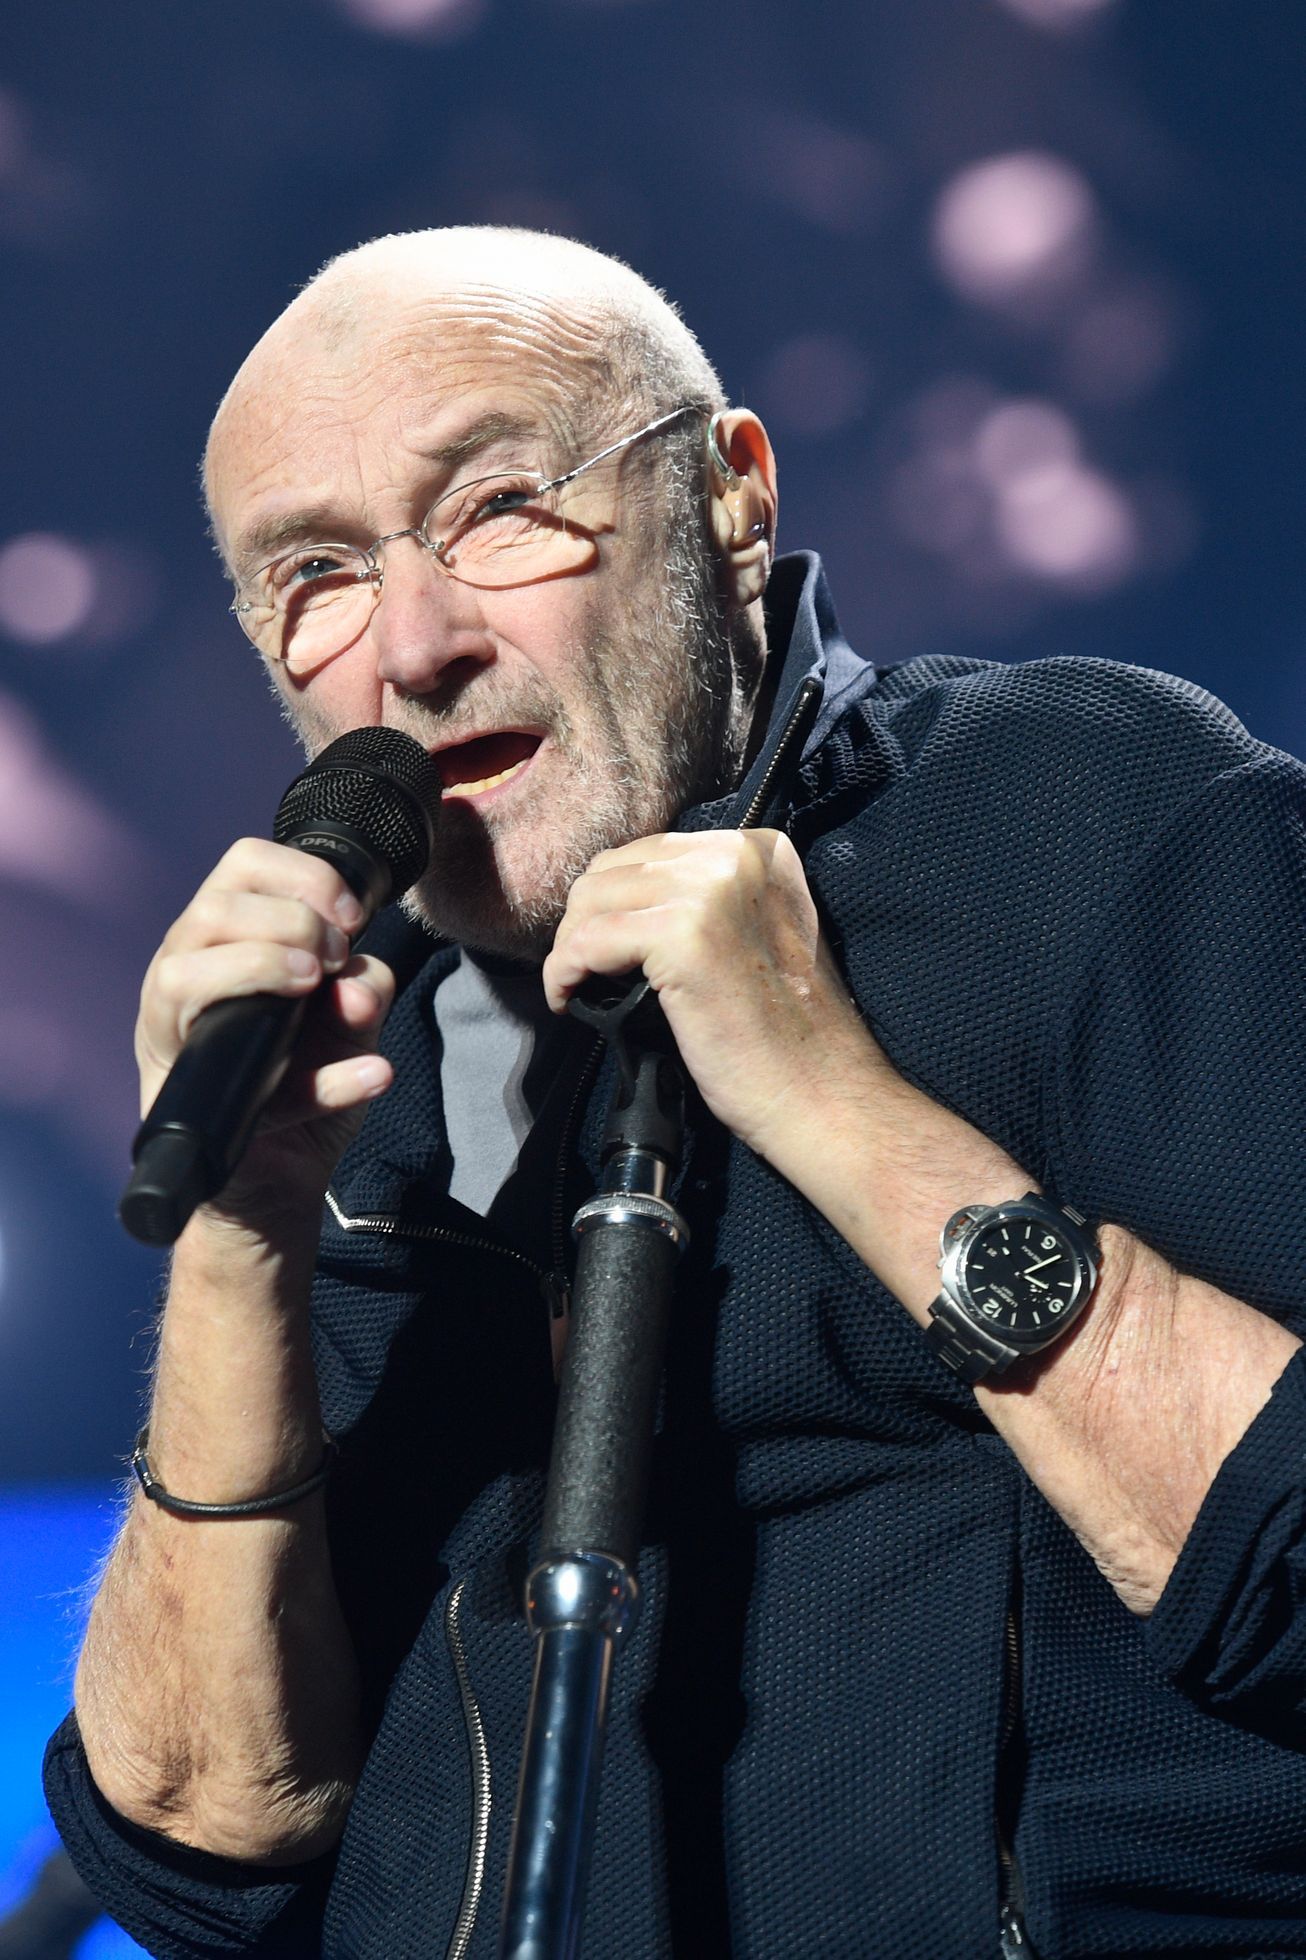 Phil Collins dit au revoir aux fans, en raison de sa mauvaise santé, il ne se produira plus en direct – ena.cz